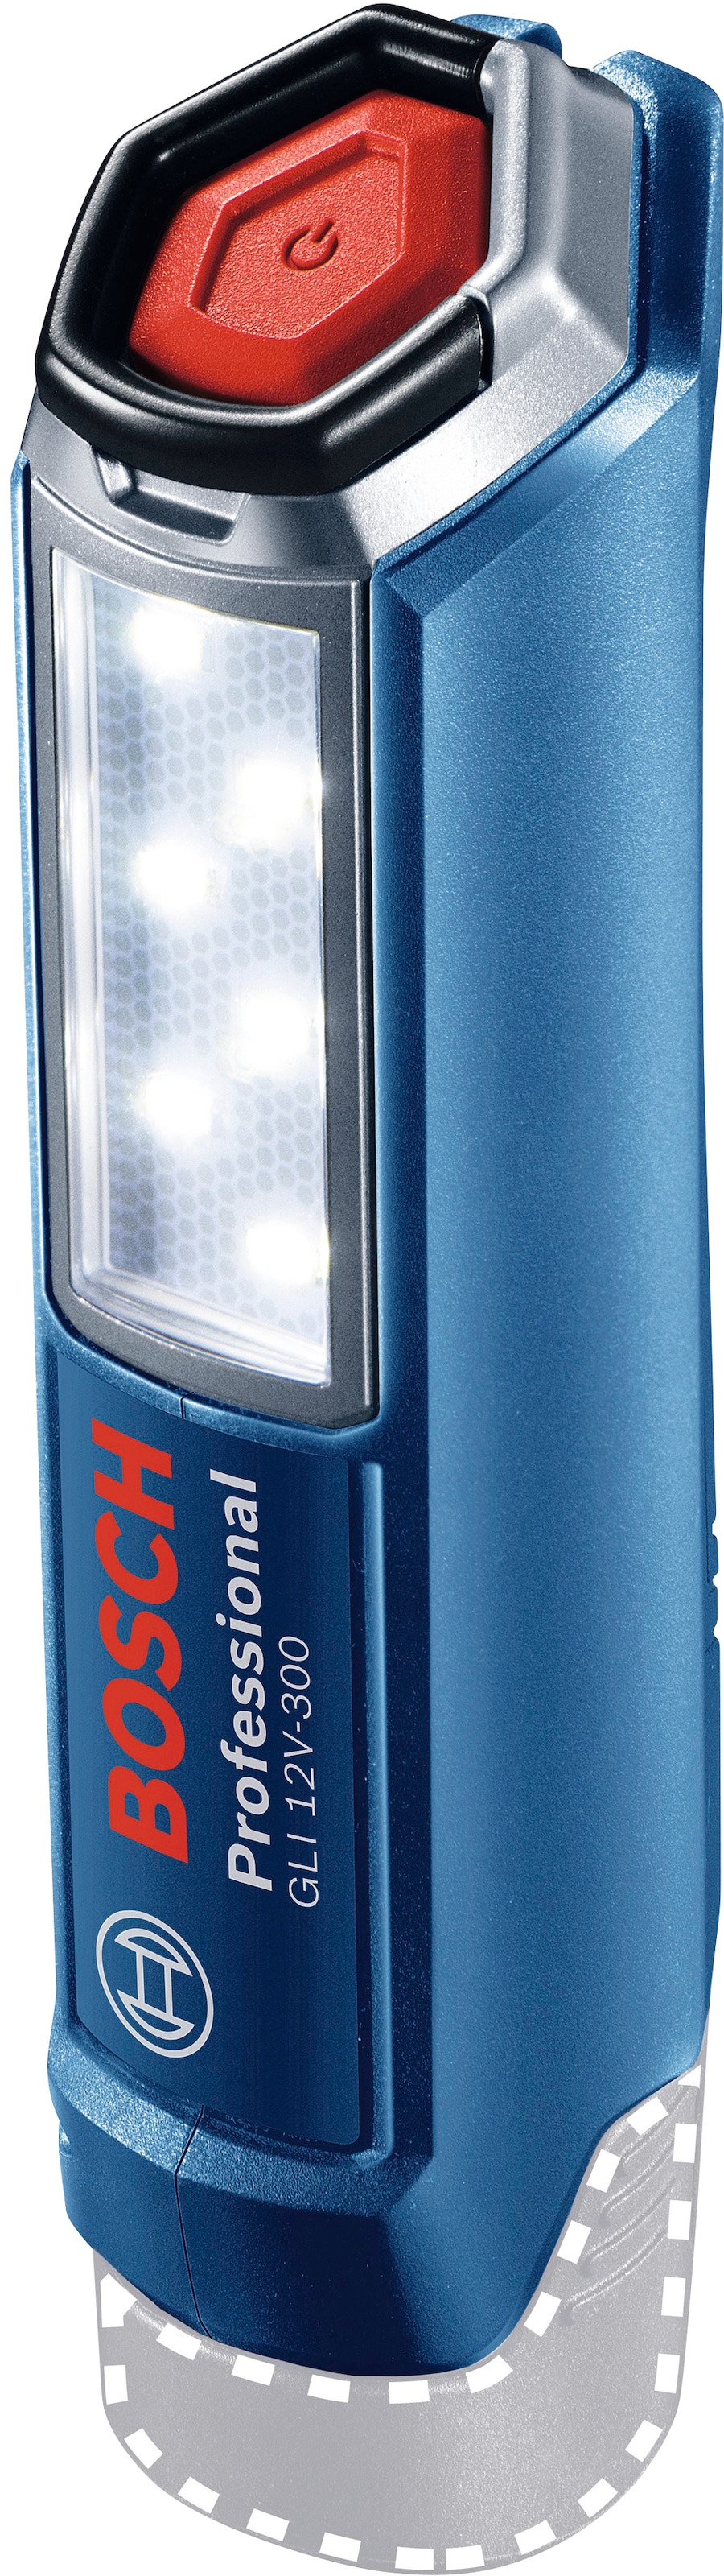 ohne Bosch Akku im Shop Professional 12V-300«, 300 LED Arbeitsleuchte OTTO »GLI V, lm, Online kaufen 12